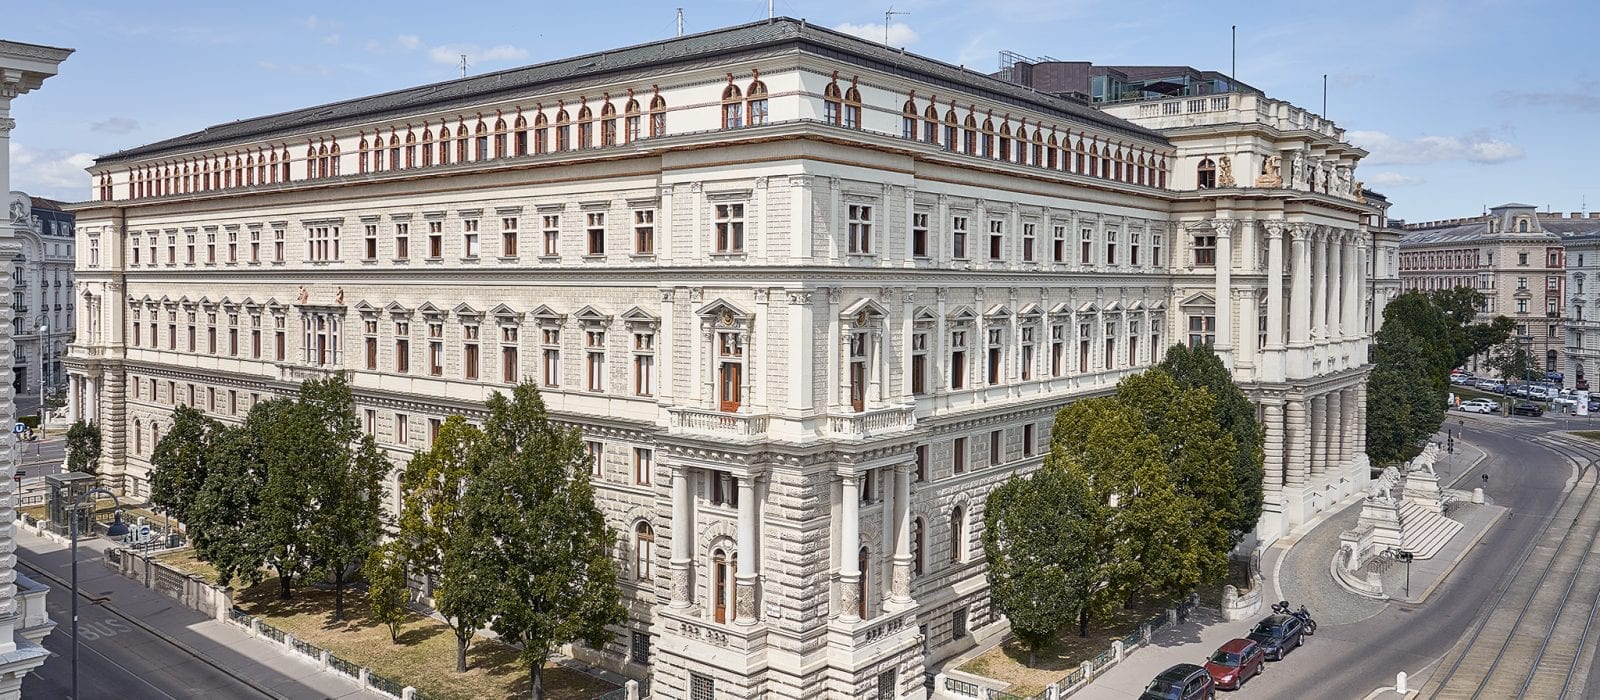 Justizpalast in Wien - Außenansicht